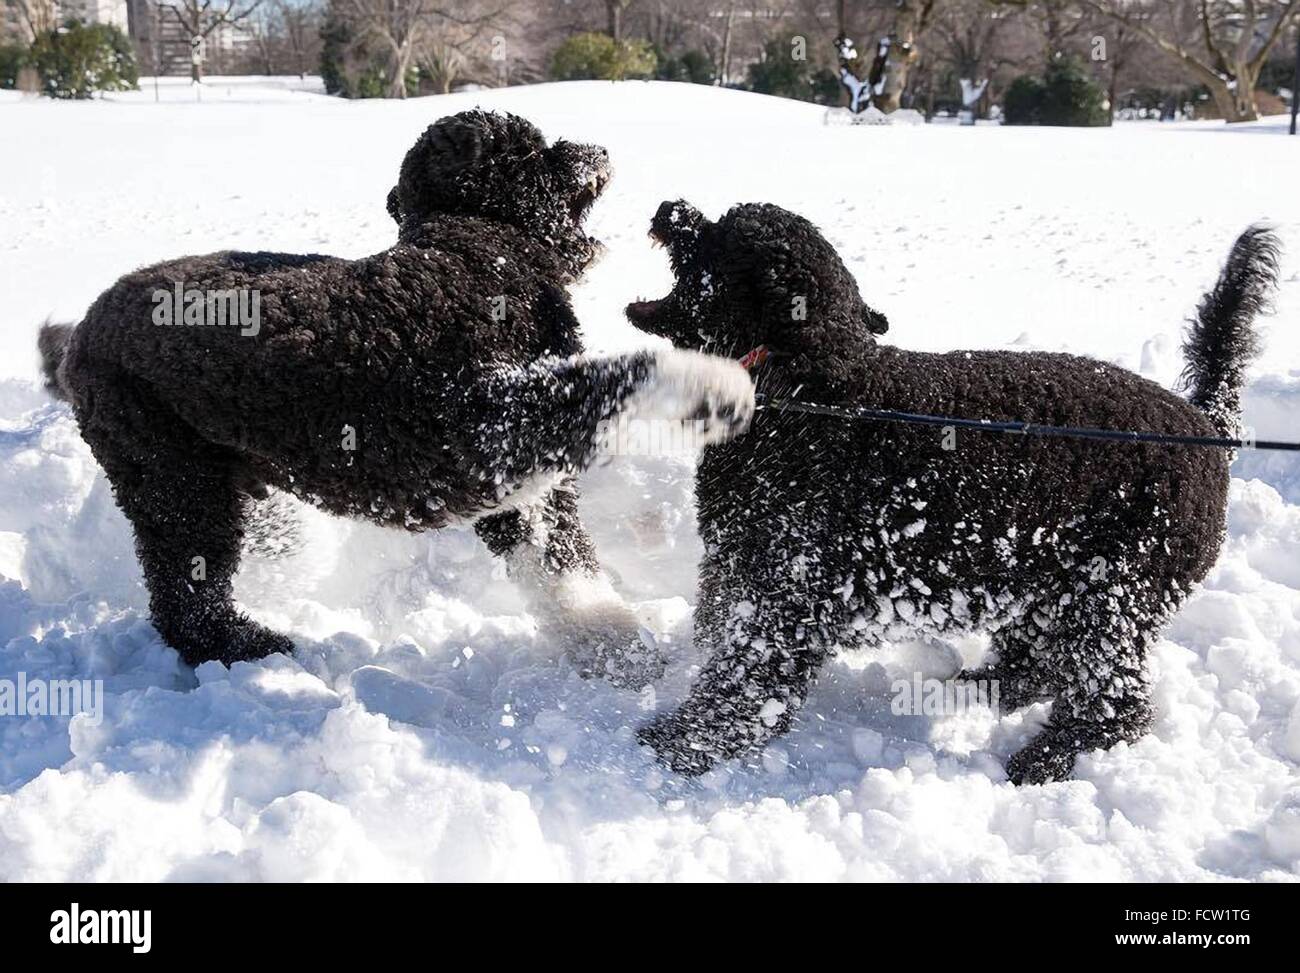 Washington, DC, USA. 24 Jan, 2016. Les chiens de la famille Obama Bo et ensoleillée, jouer dans la neige sur la pelouse Sud de la Maison Blanche le 24 janvier 2016 Travaux publics à Washington, DC. Banque D'Images